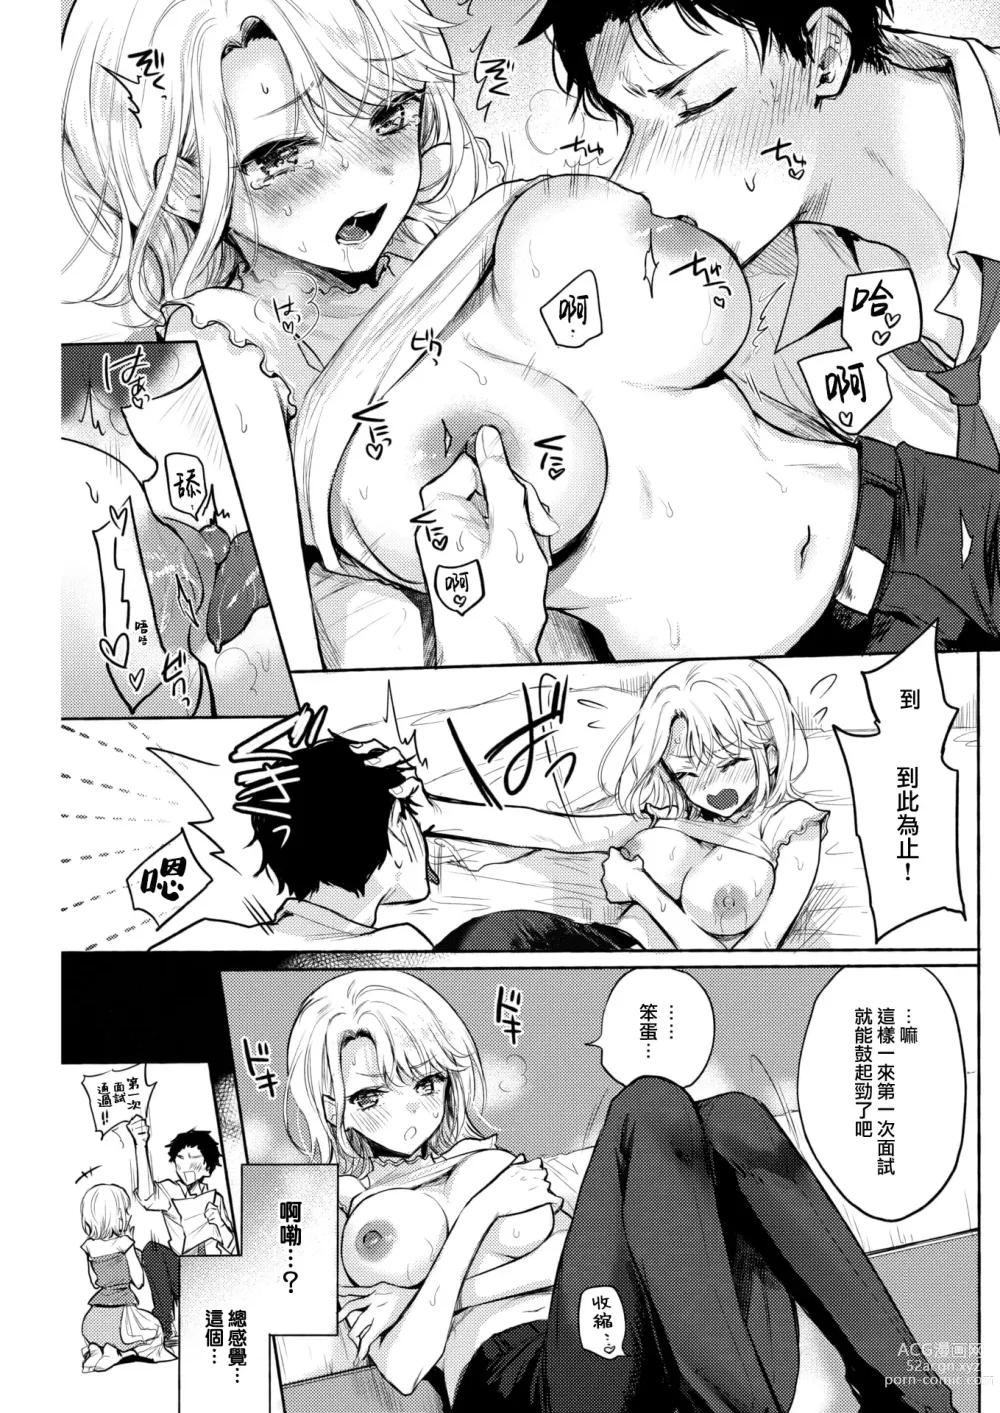 Page 8 of manga ] Shuukatsu Bonus Challenge!